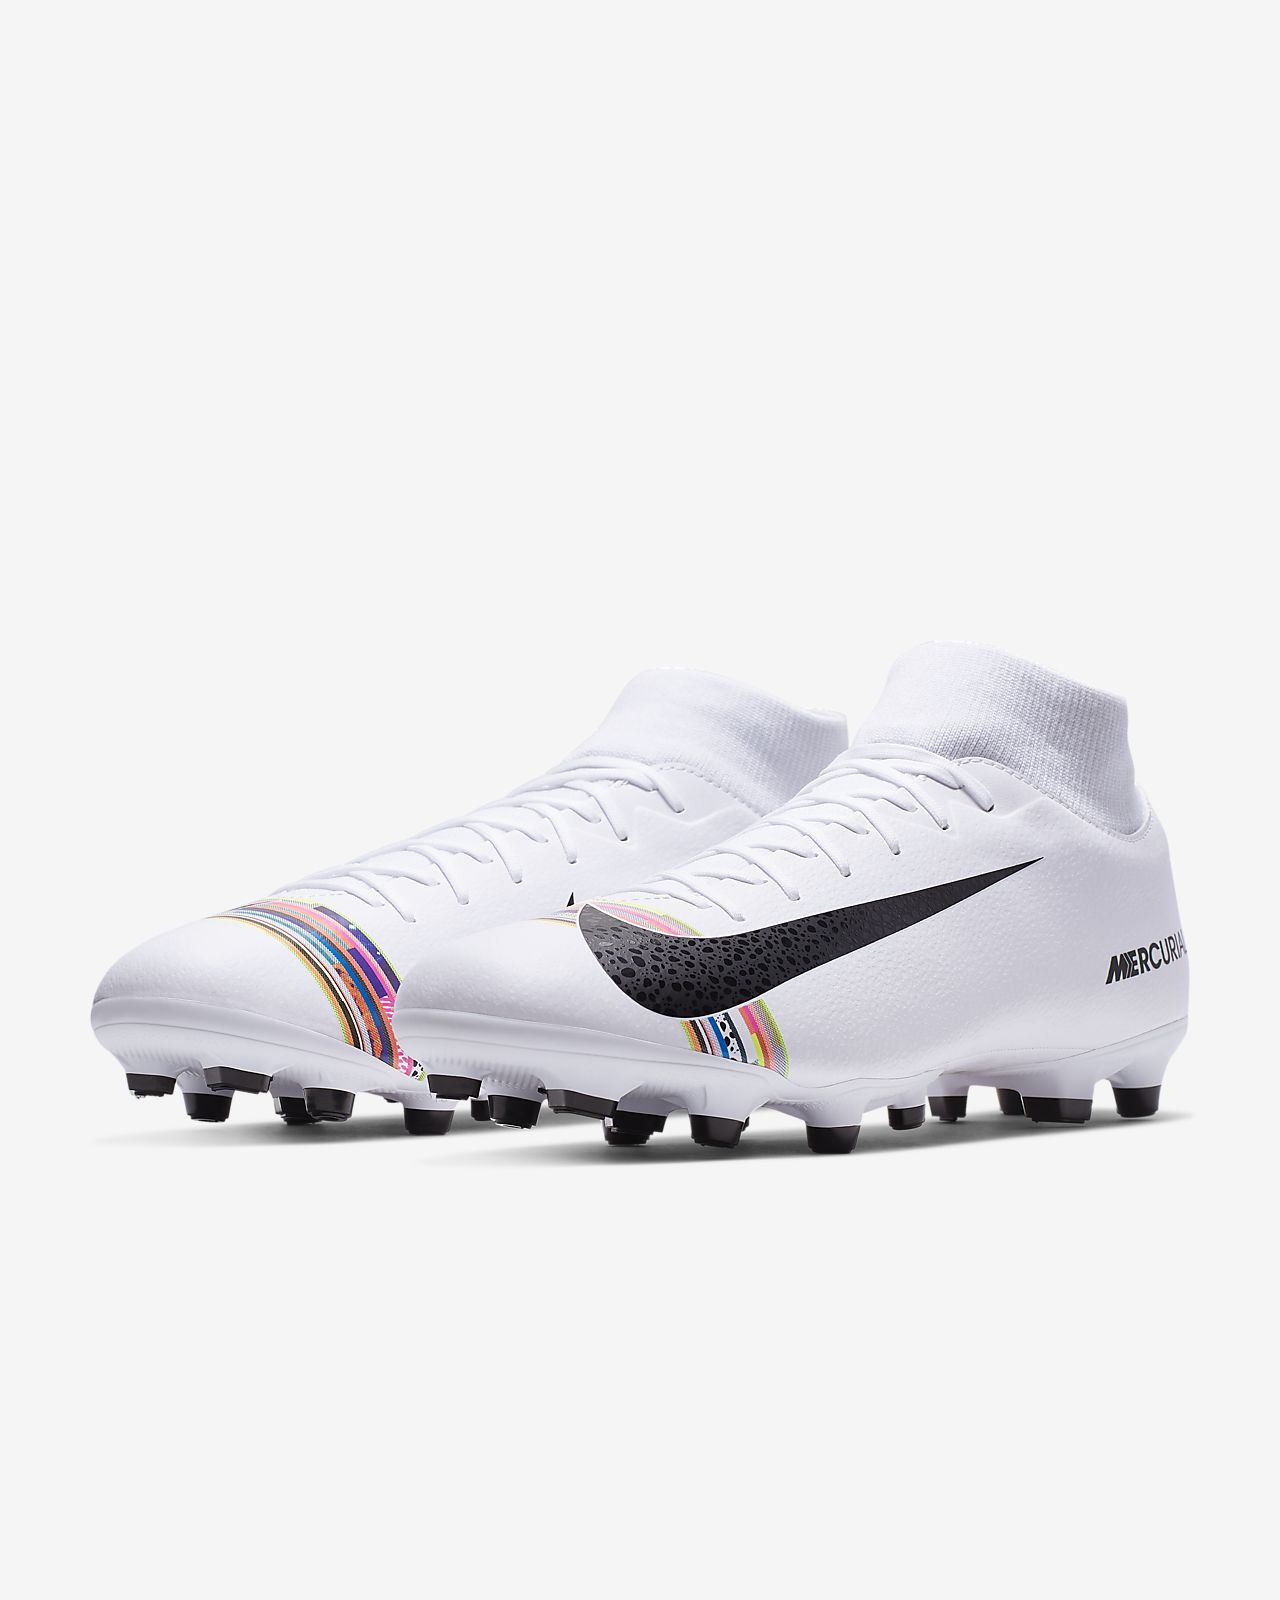 Nike Mercurial Superfly Vi Pro Fg U $ S 264 Football Shoes 264.